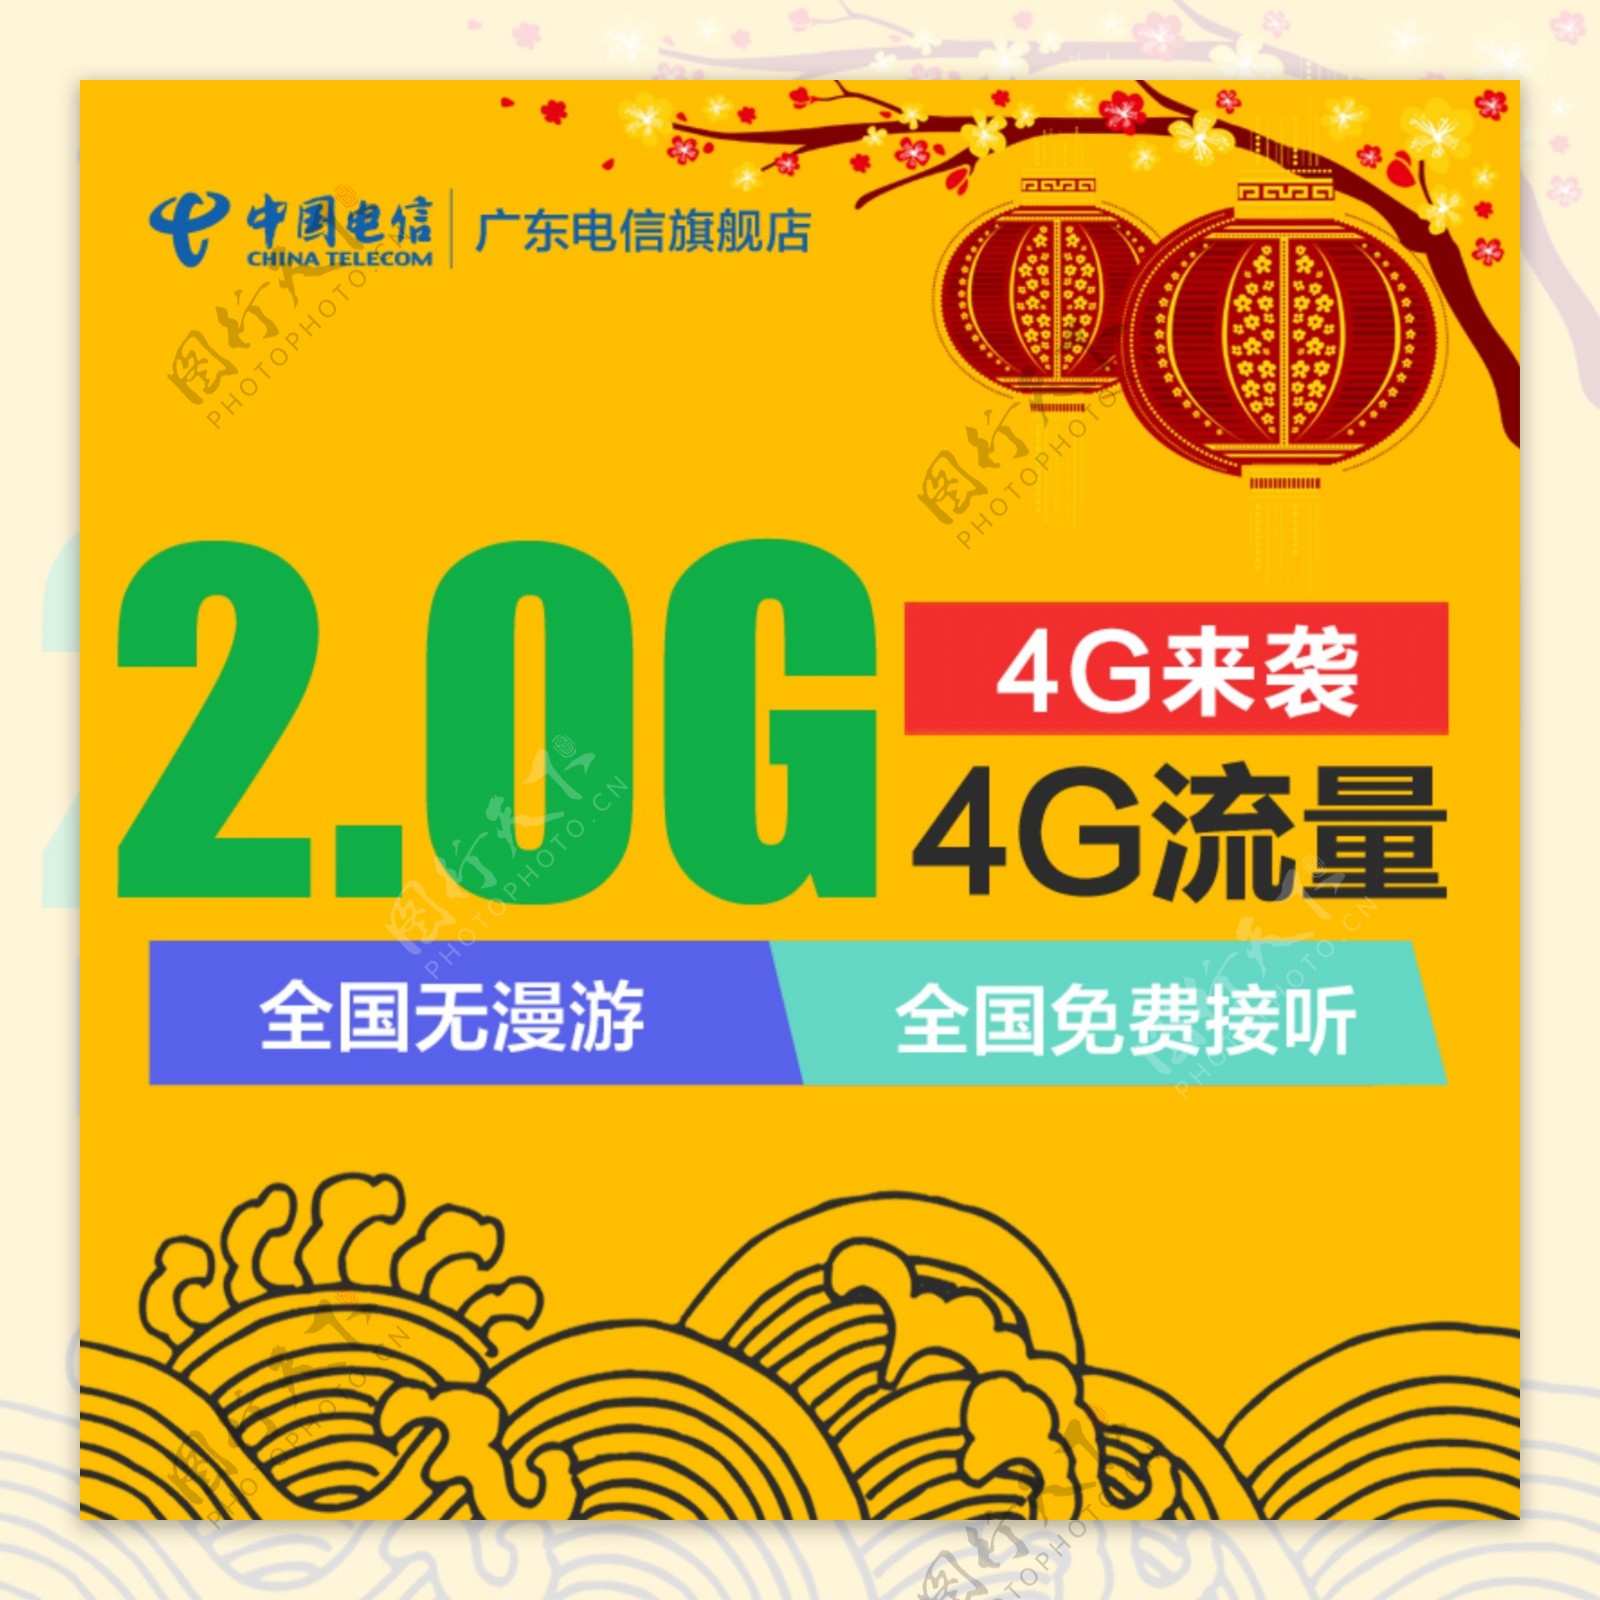 4G无漫游卡橱窗图新年版